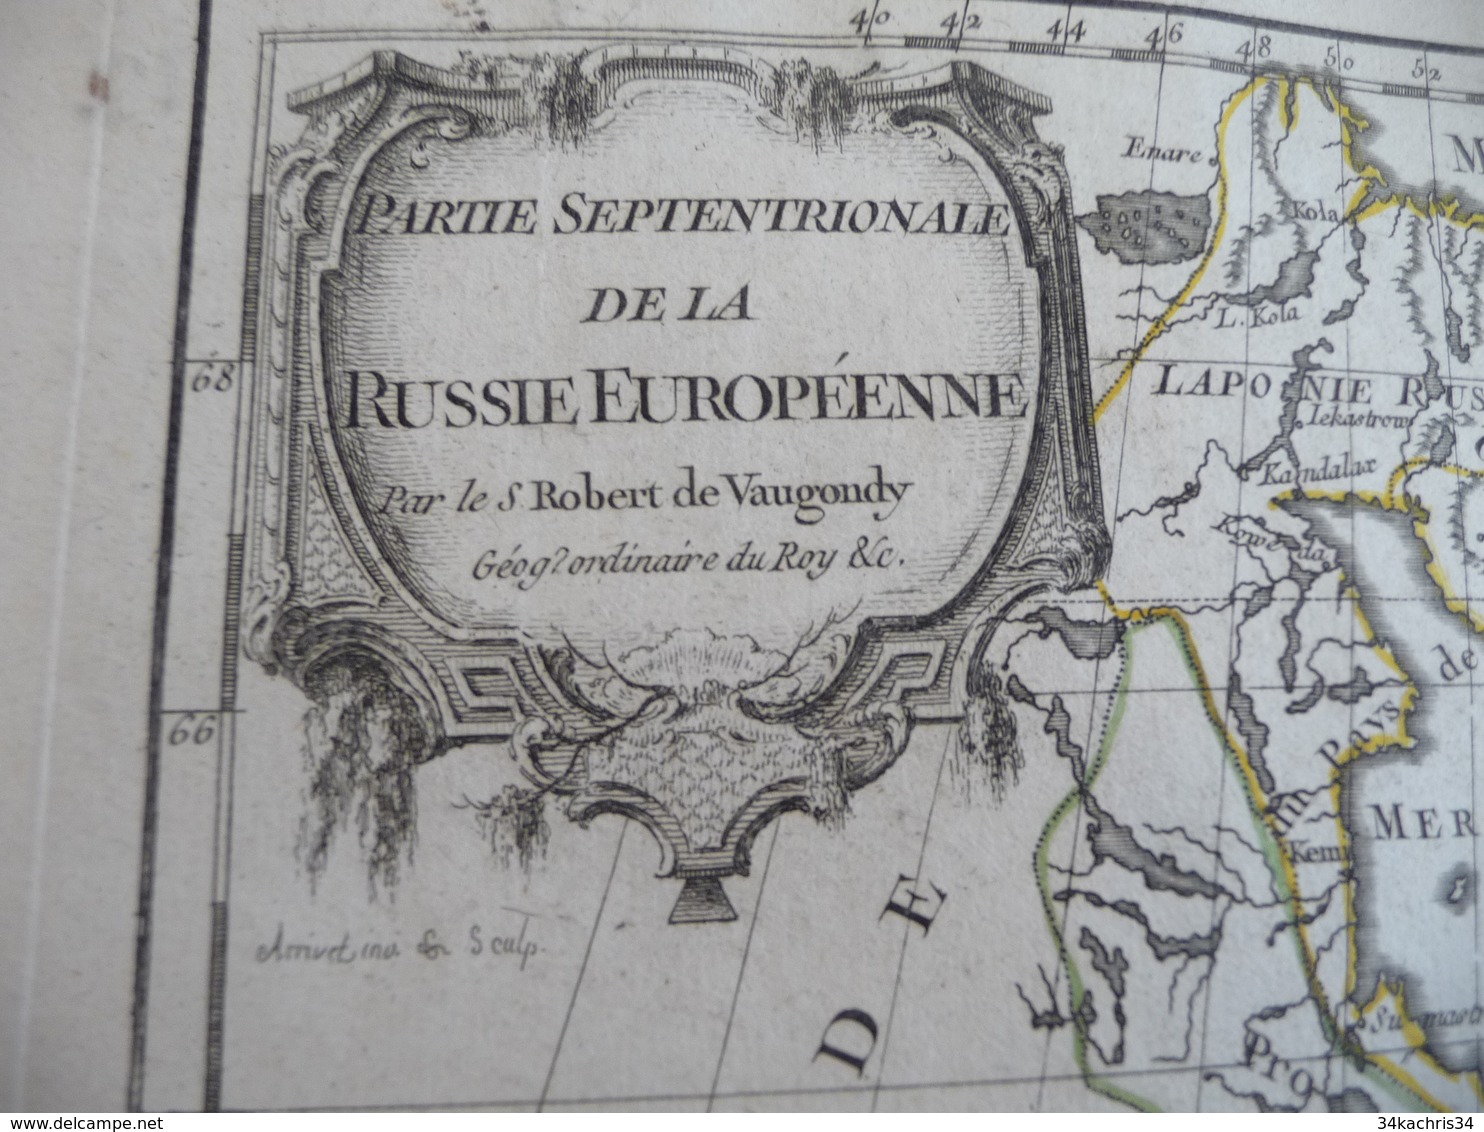 Carte Atlas Vaugondy 1778 Gravée Par Dussy 40 X 29cm Mouillures Partie Septentrionale De La Russie Européenne - Carte Geographique